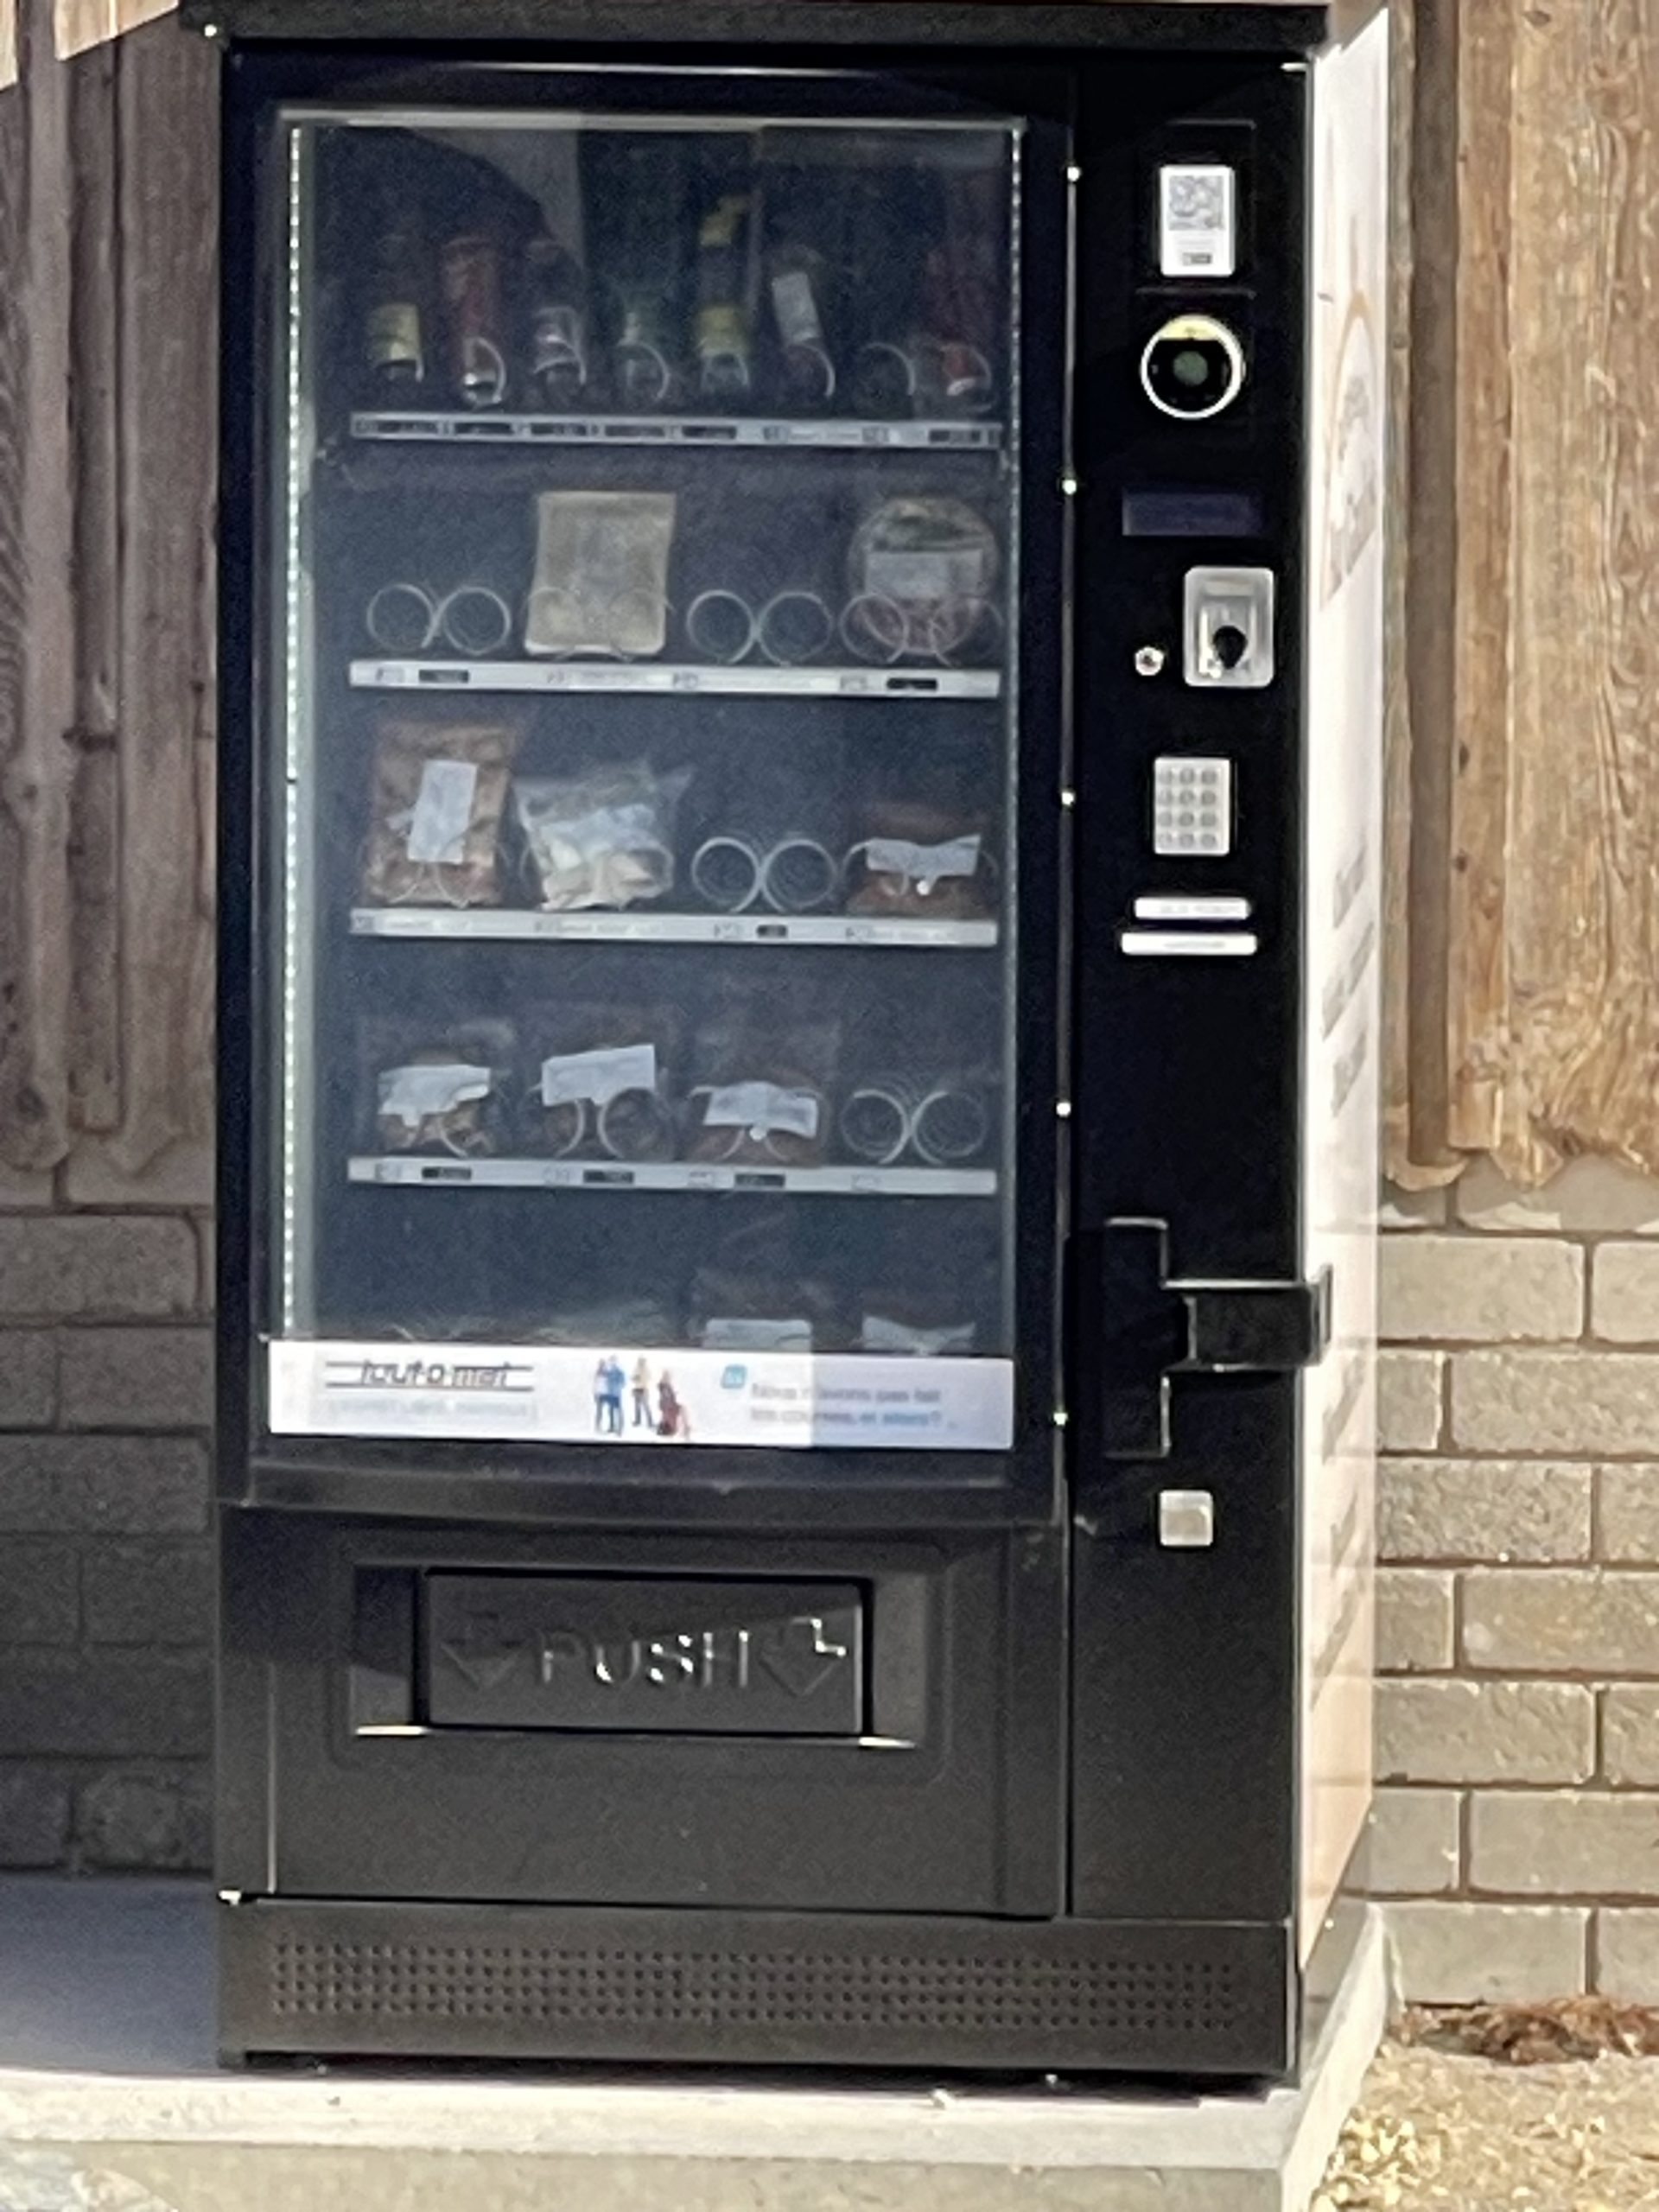 automat distributeur automatique